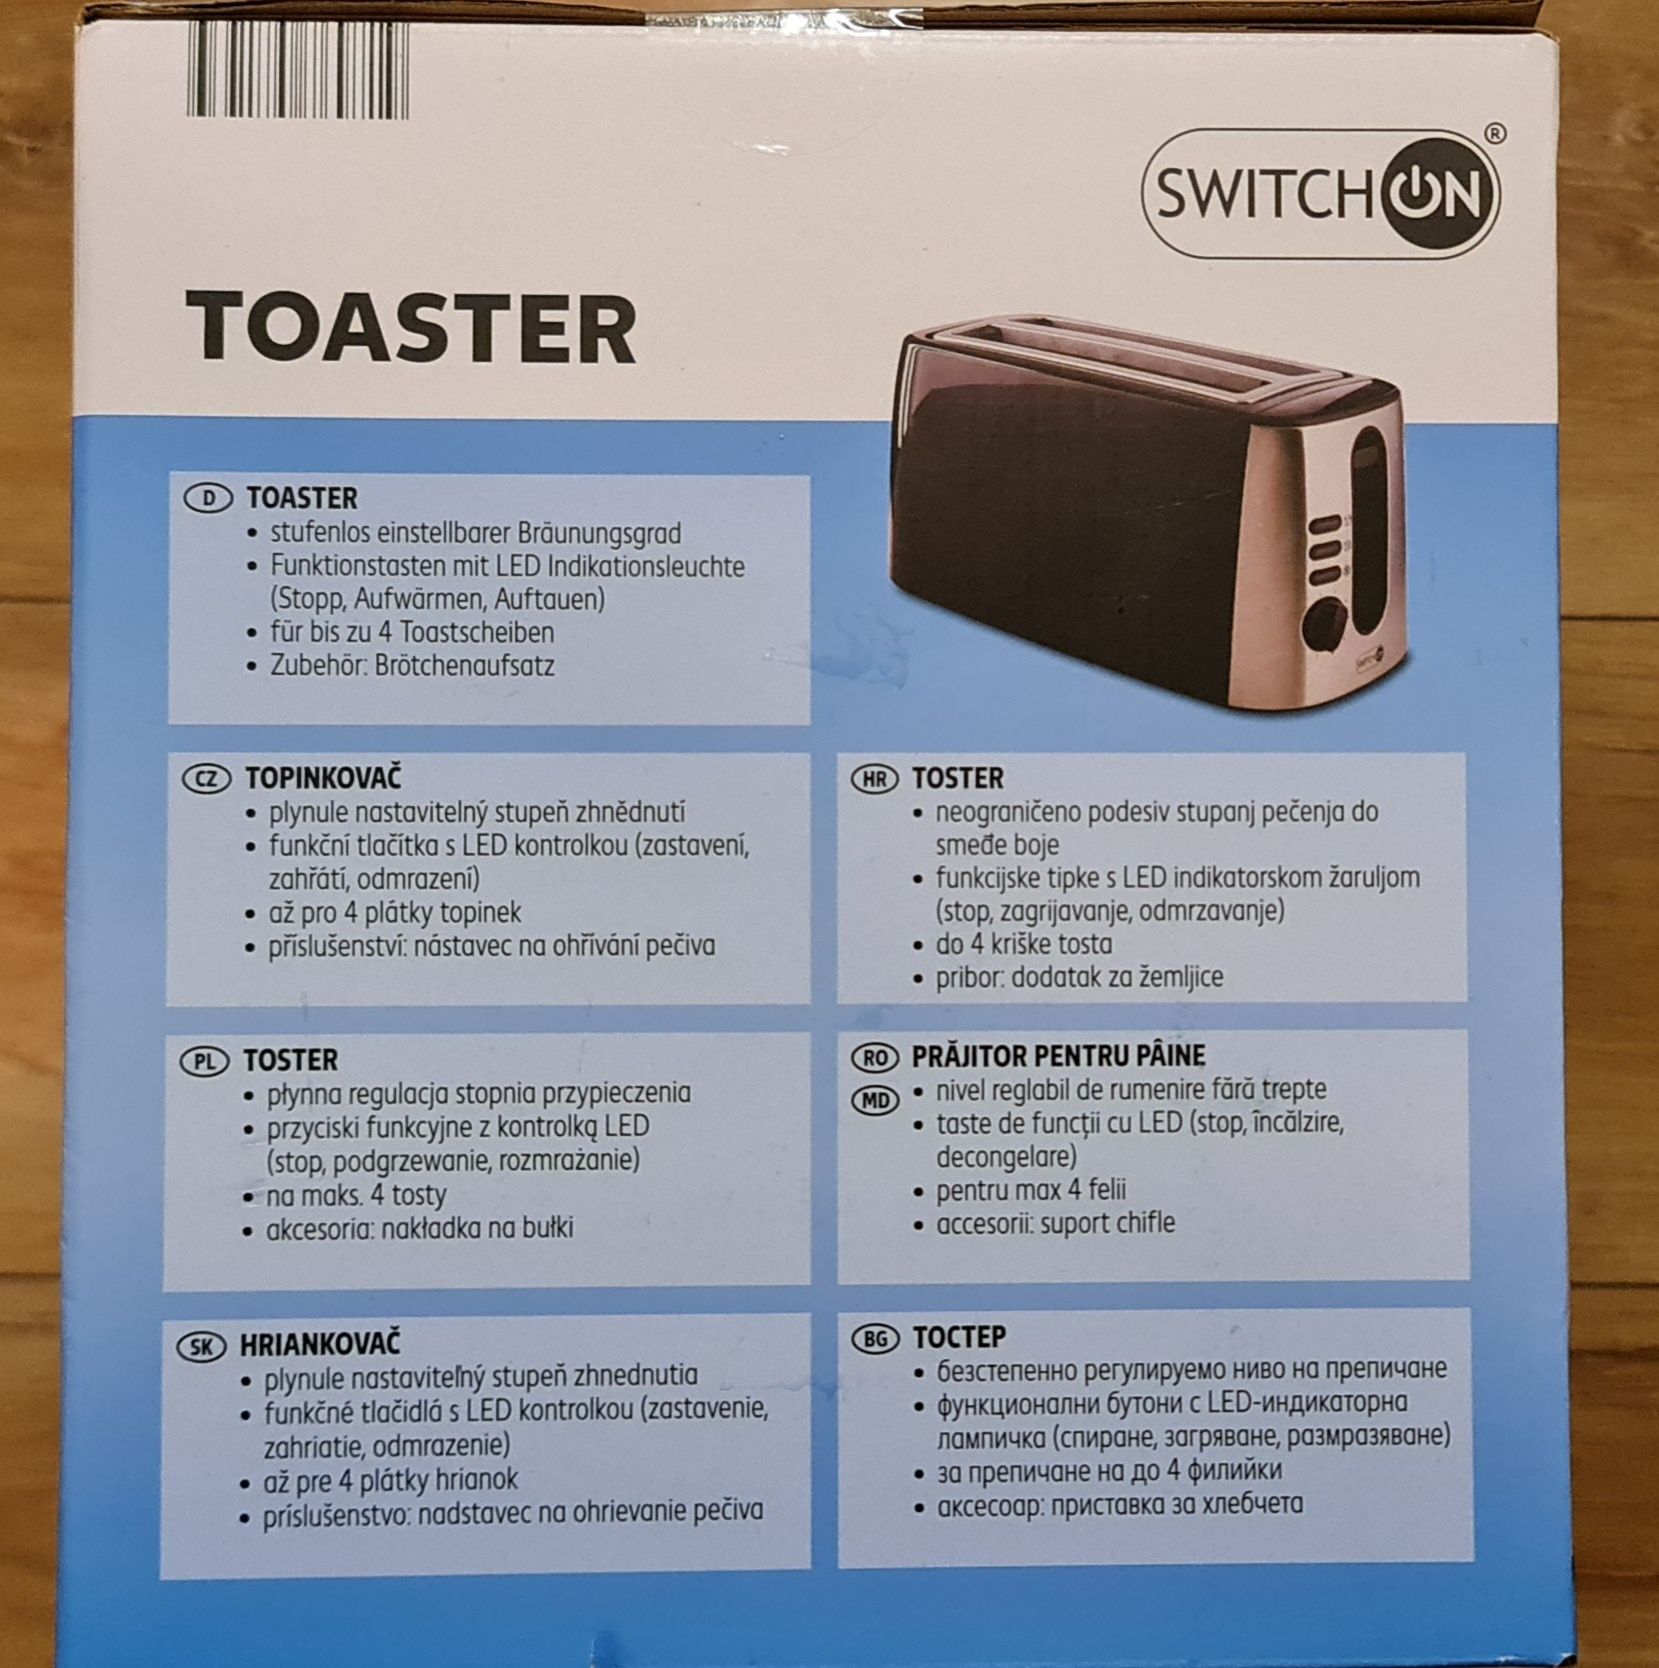 Toster duży na 4 tosty. Wysoki model. 3 lata gwarancji.